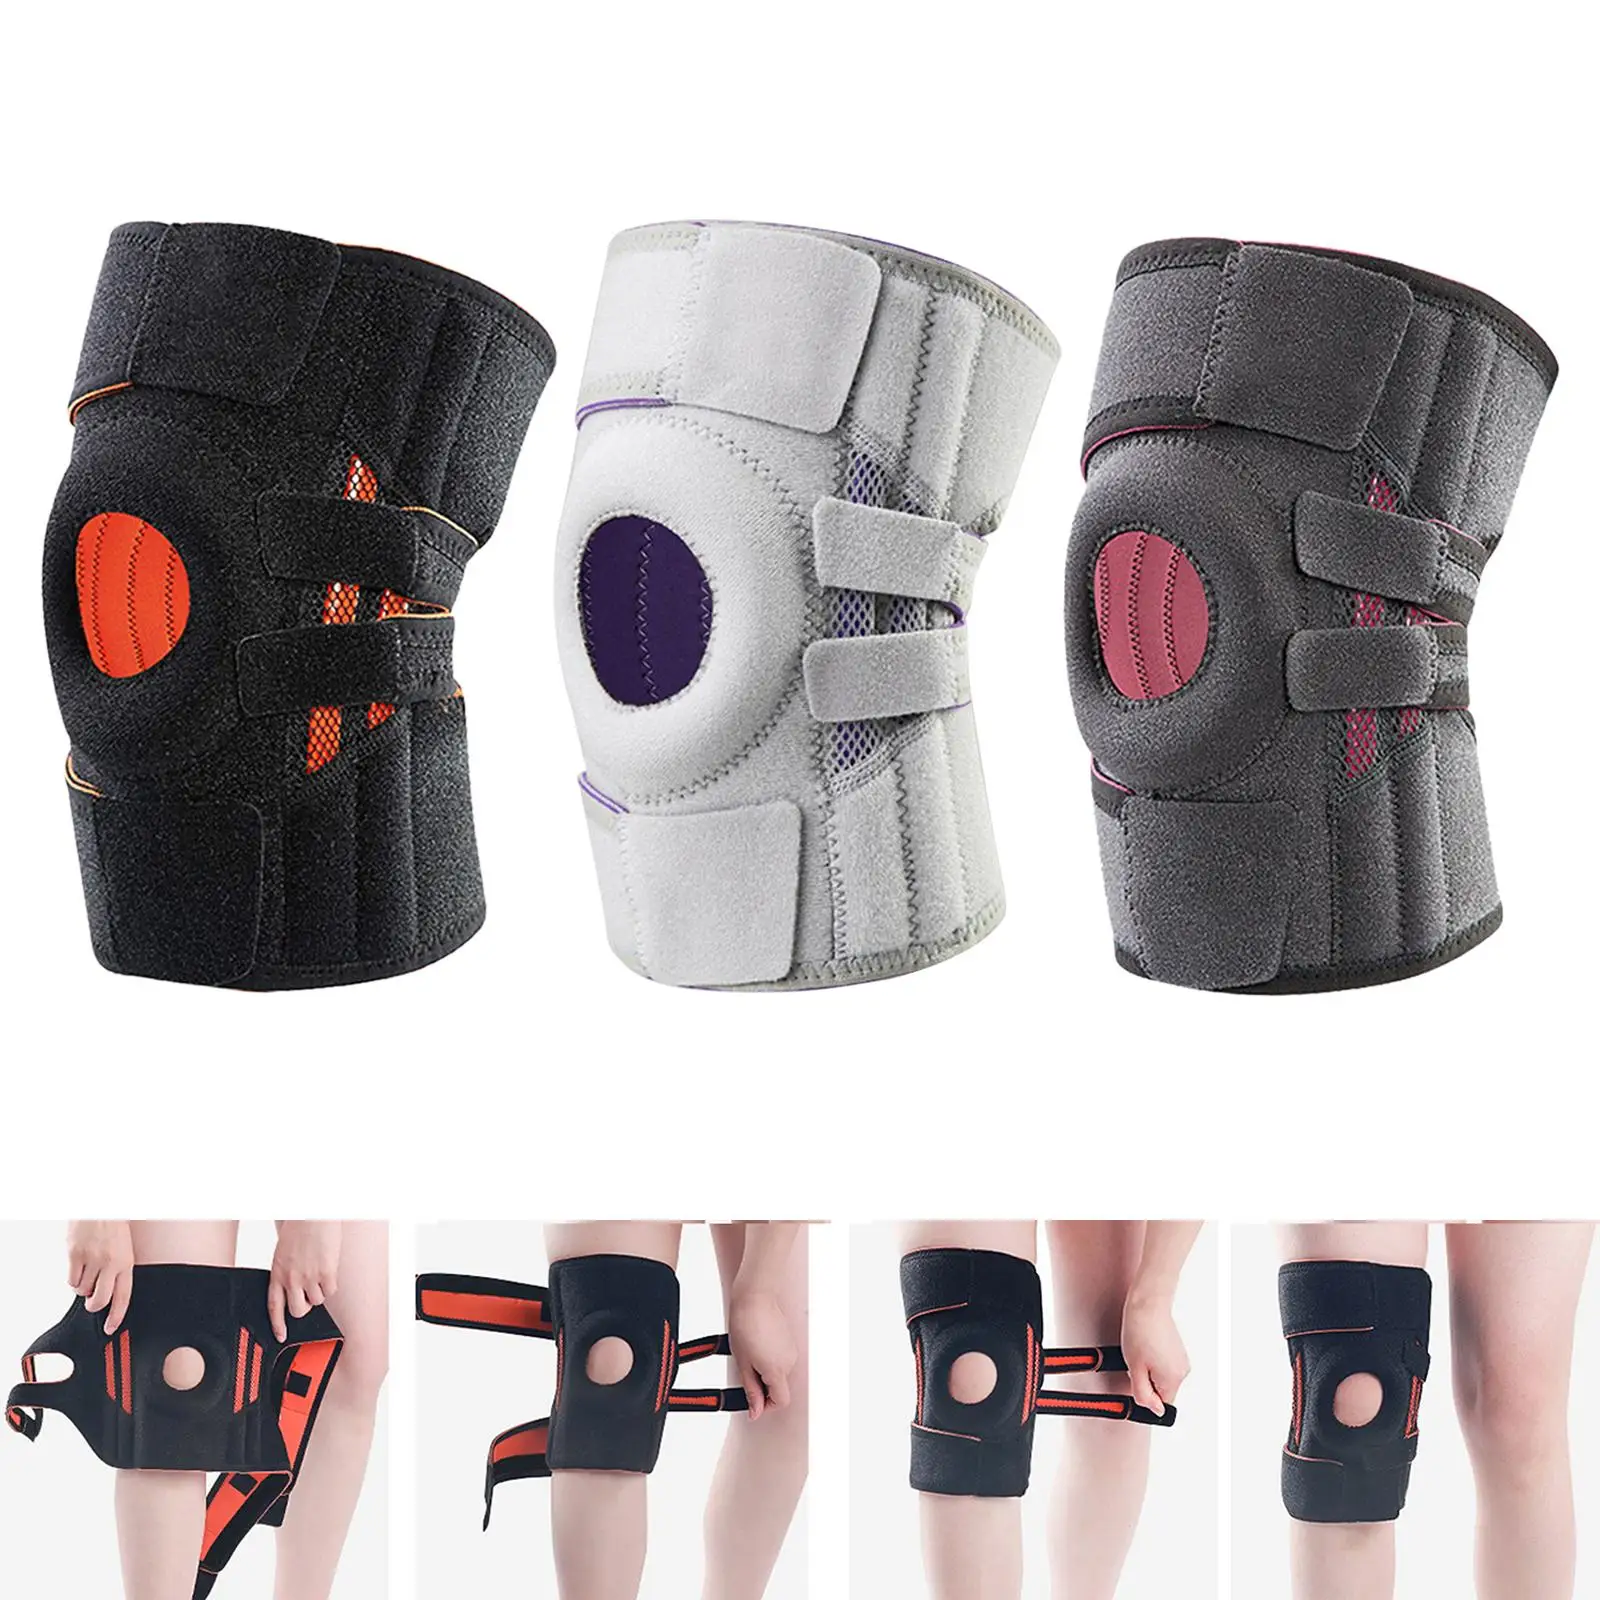 Compression Adjustable Knee Brace Arthritis Pad Patella Sleeve